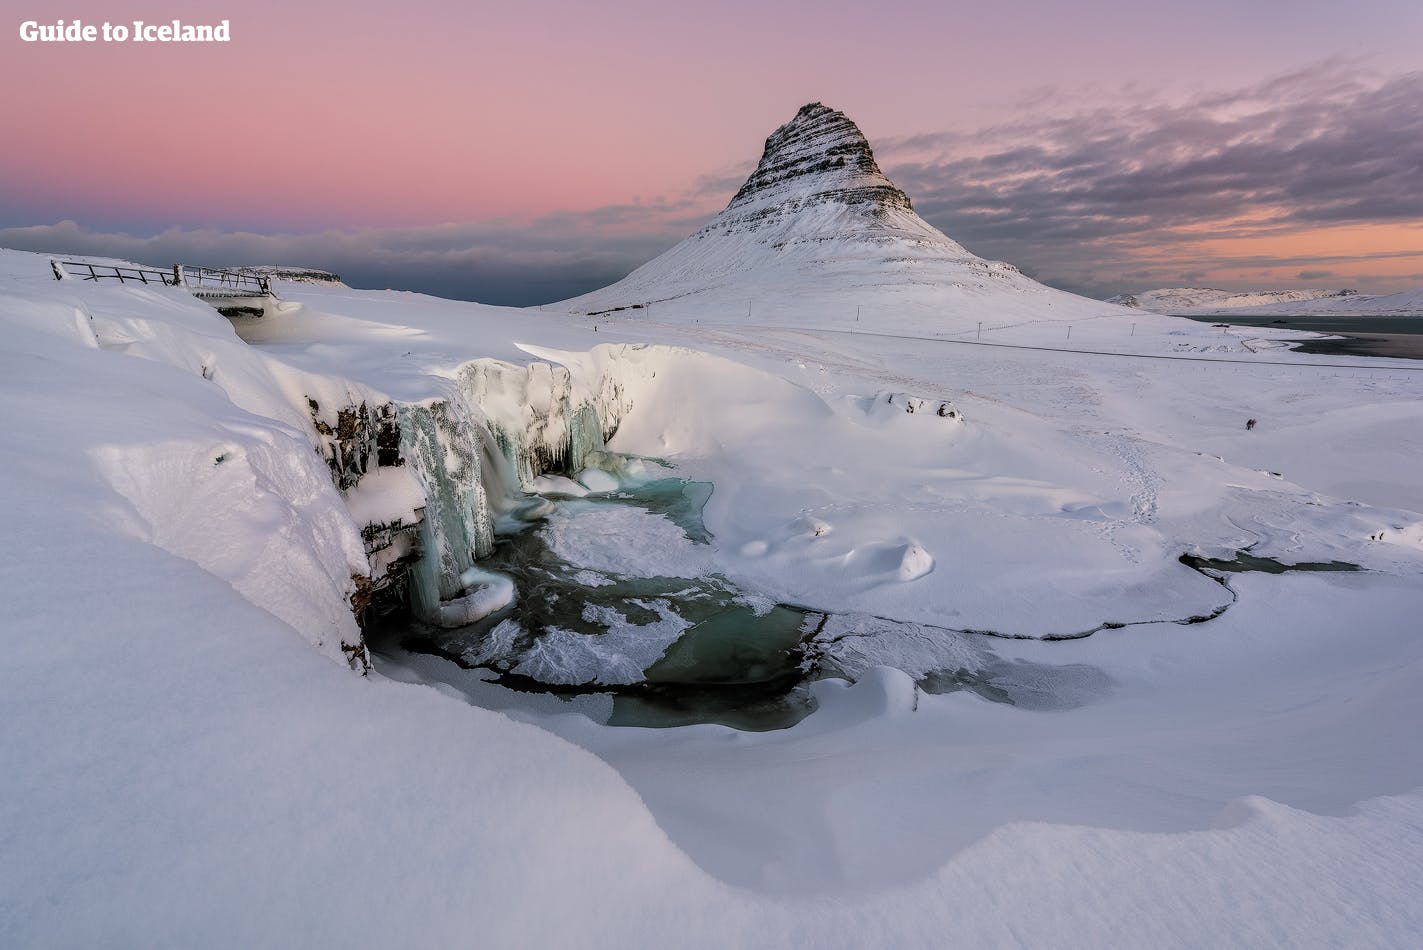 La península de Snæfellsnes, o "Islandia en miniatura", como se la conoce, es hermosa durante todo el año, pero algo más mística en pleno invierno.